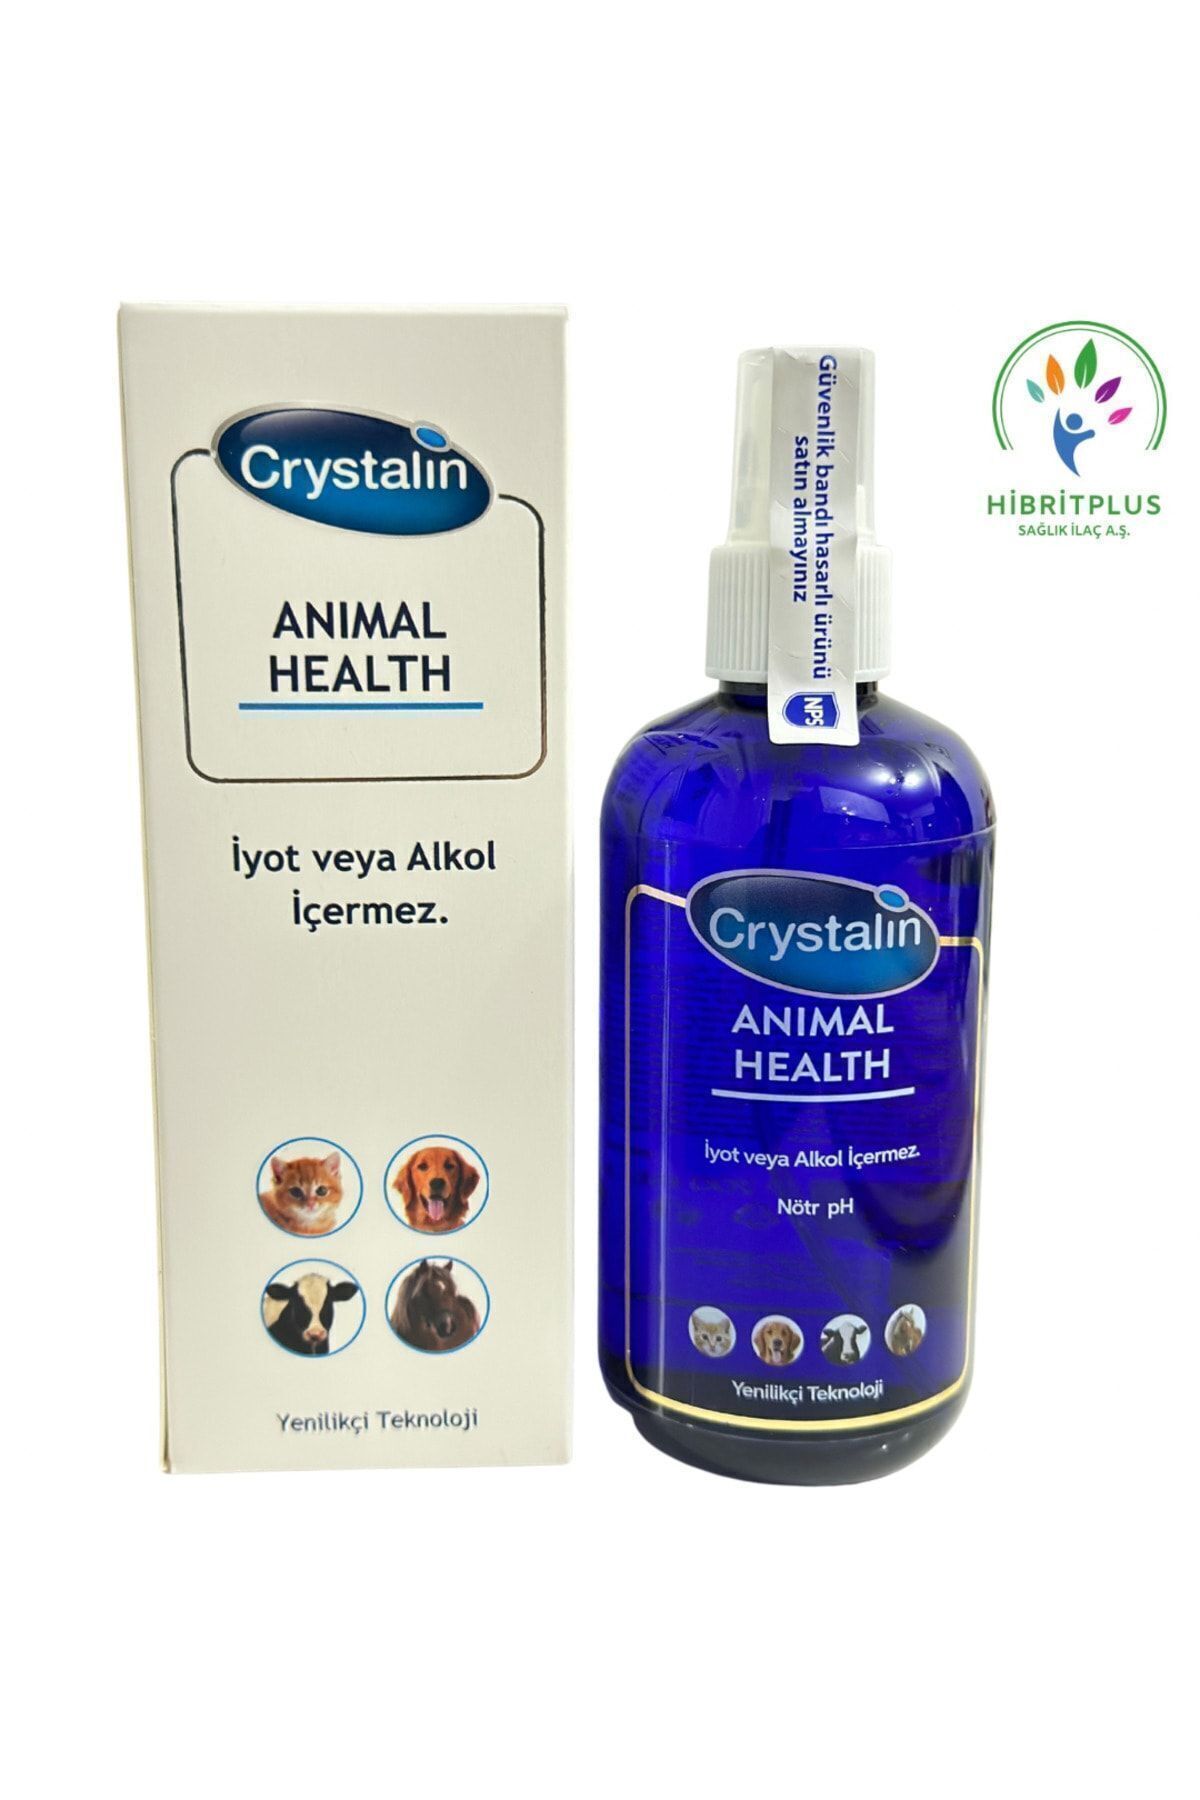 Crystalin Animal Health 250 ml 2026 Miatlıdır